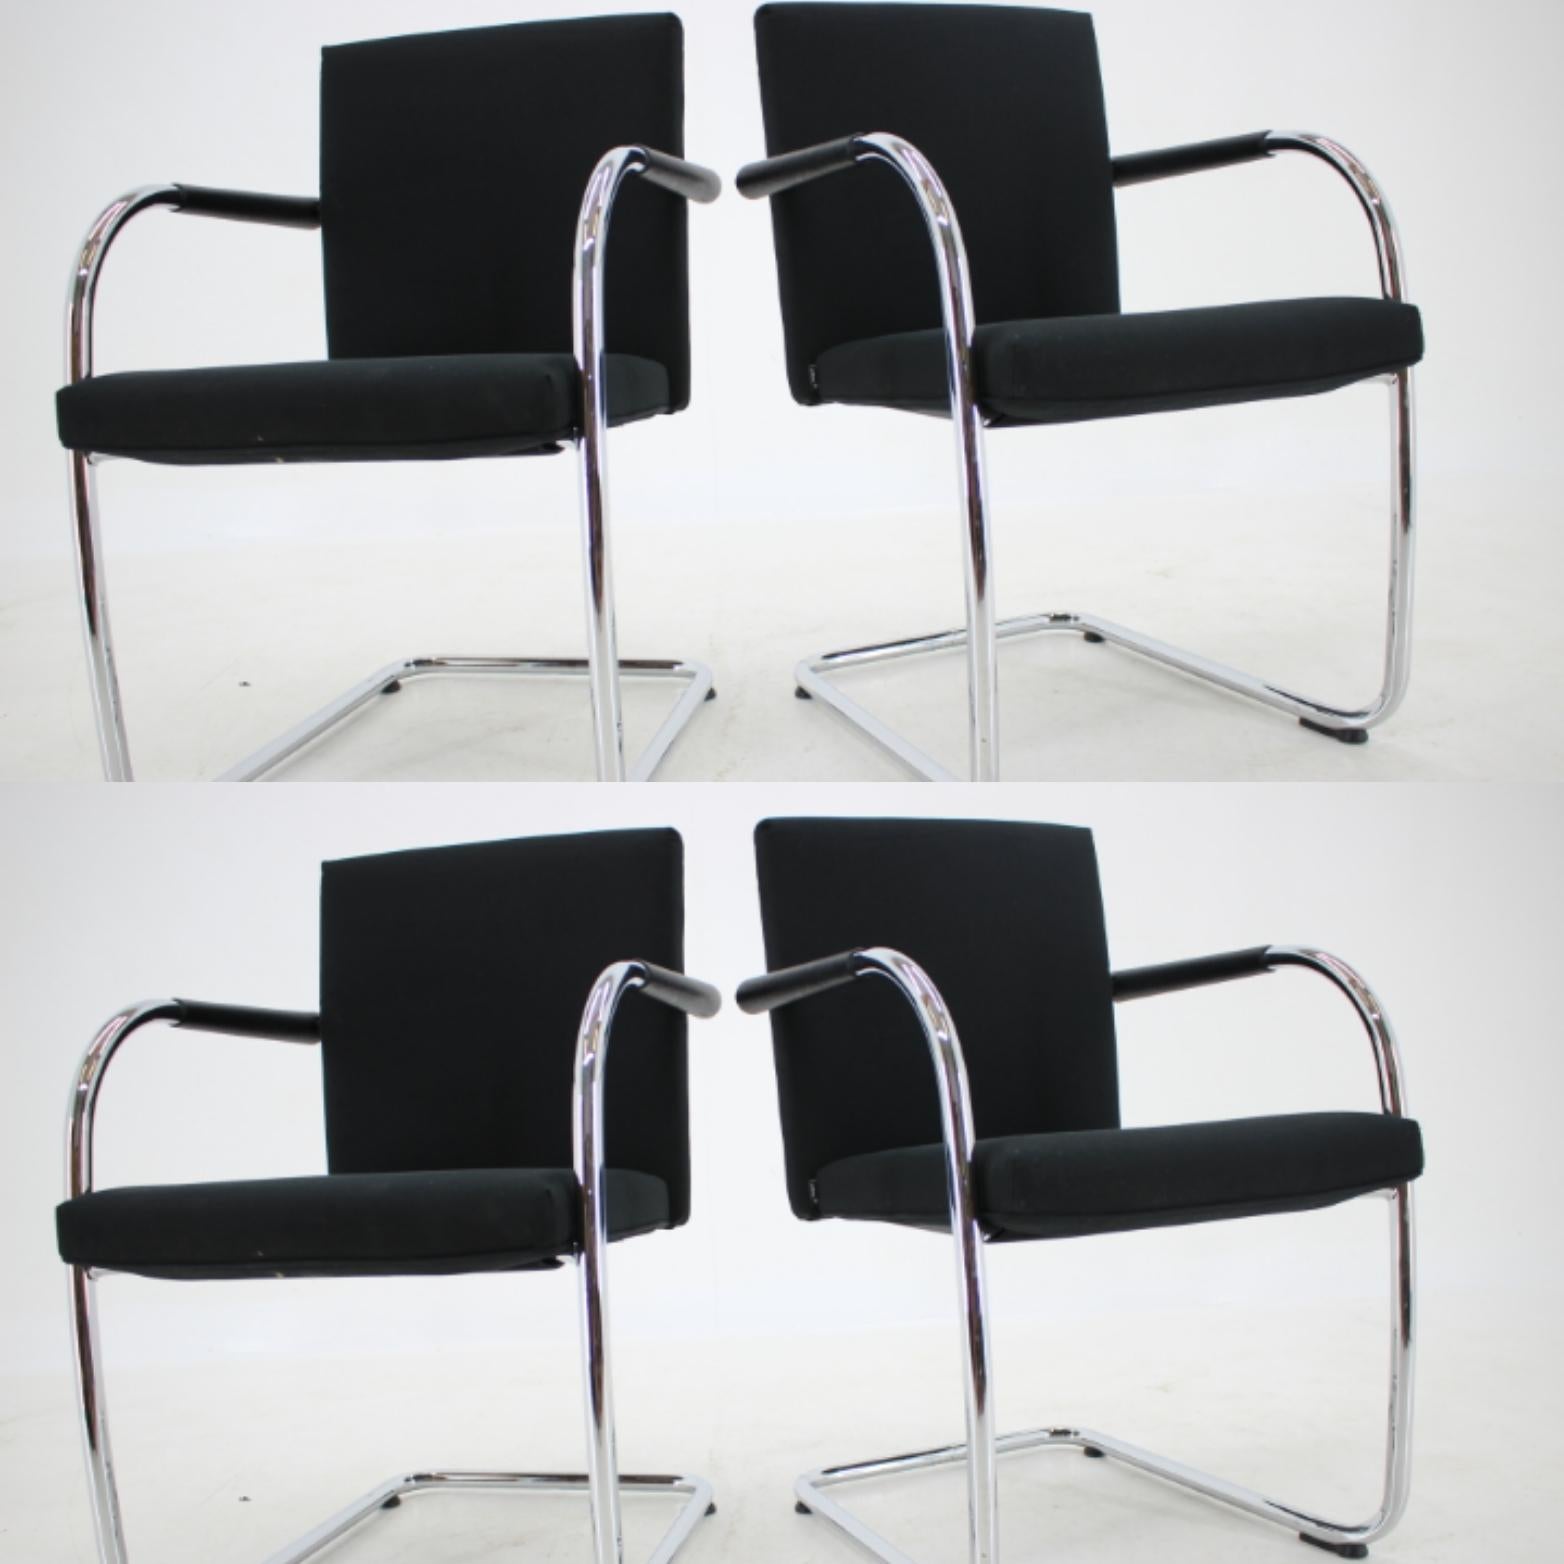 - Modell Visasoft
- Markiert
- Sehr praktischer und bequemer Stuhl
- Im Stil des Barcelona-Stuhls / Mies van der Rohe
- Auch als Esszimmerstuhl.